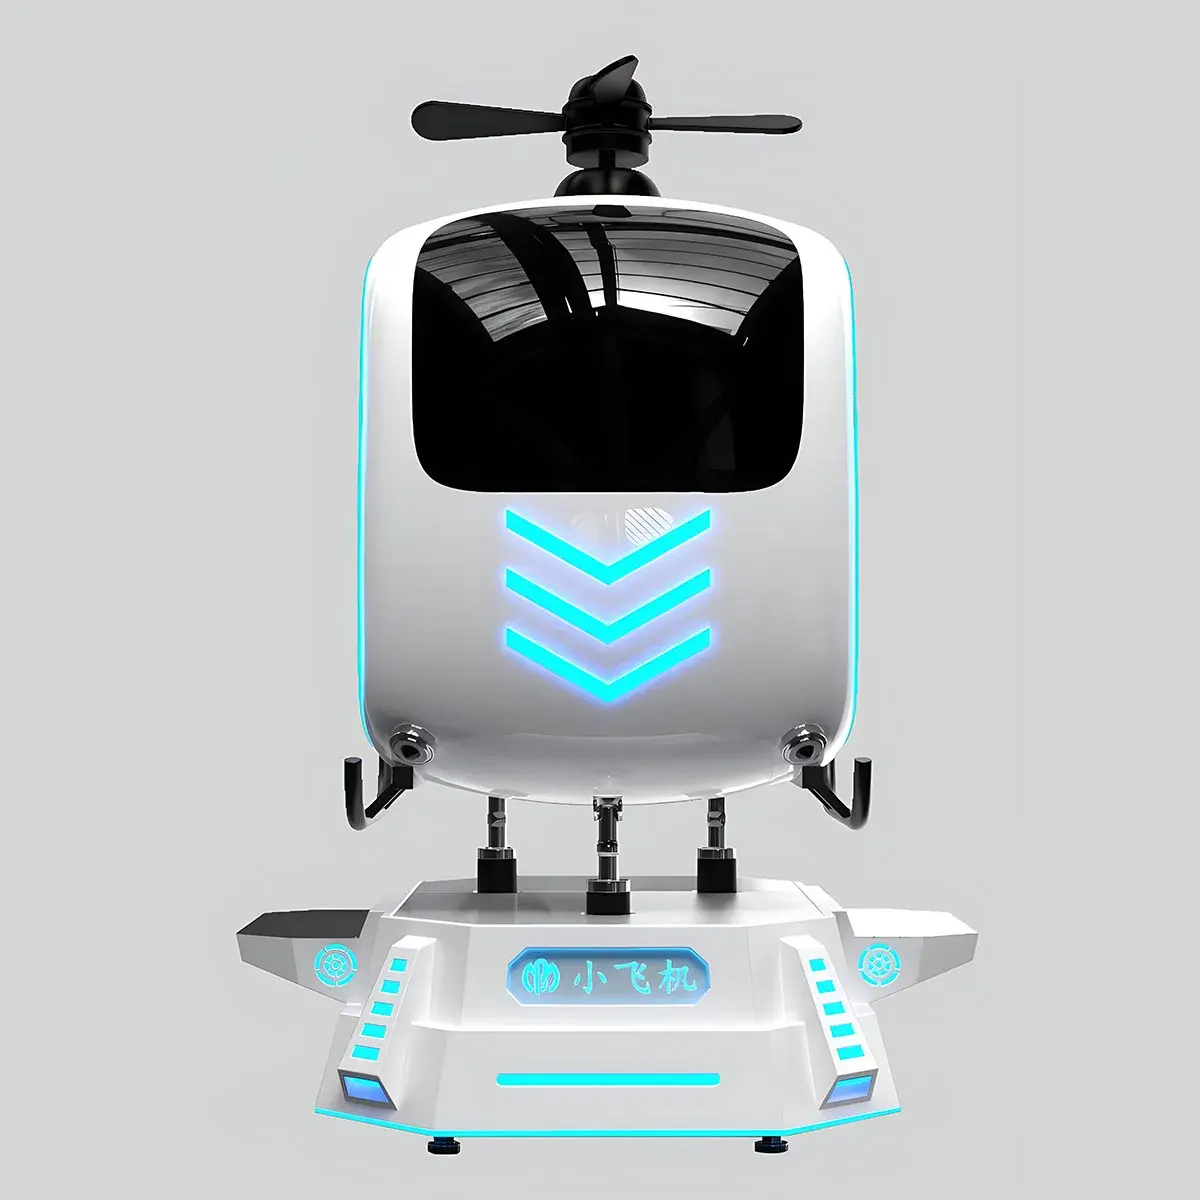 Dreamland 9D uçan VR konumlar kokpit uçak 9D uçuş VR uçak simülatörü VR helikopter